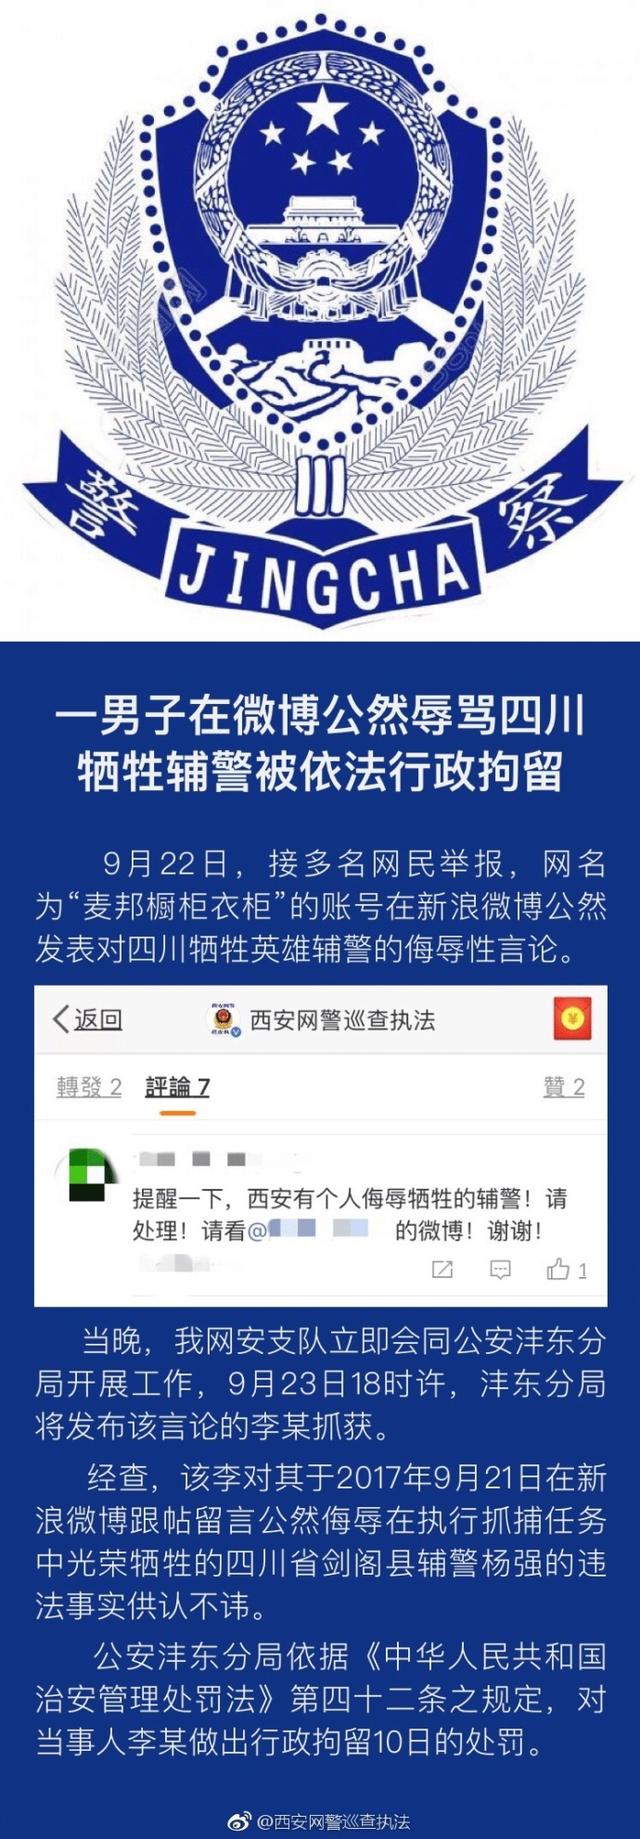 西安男子在微博辱骂四川牺牲辅警被行政拘留